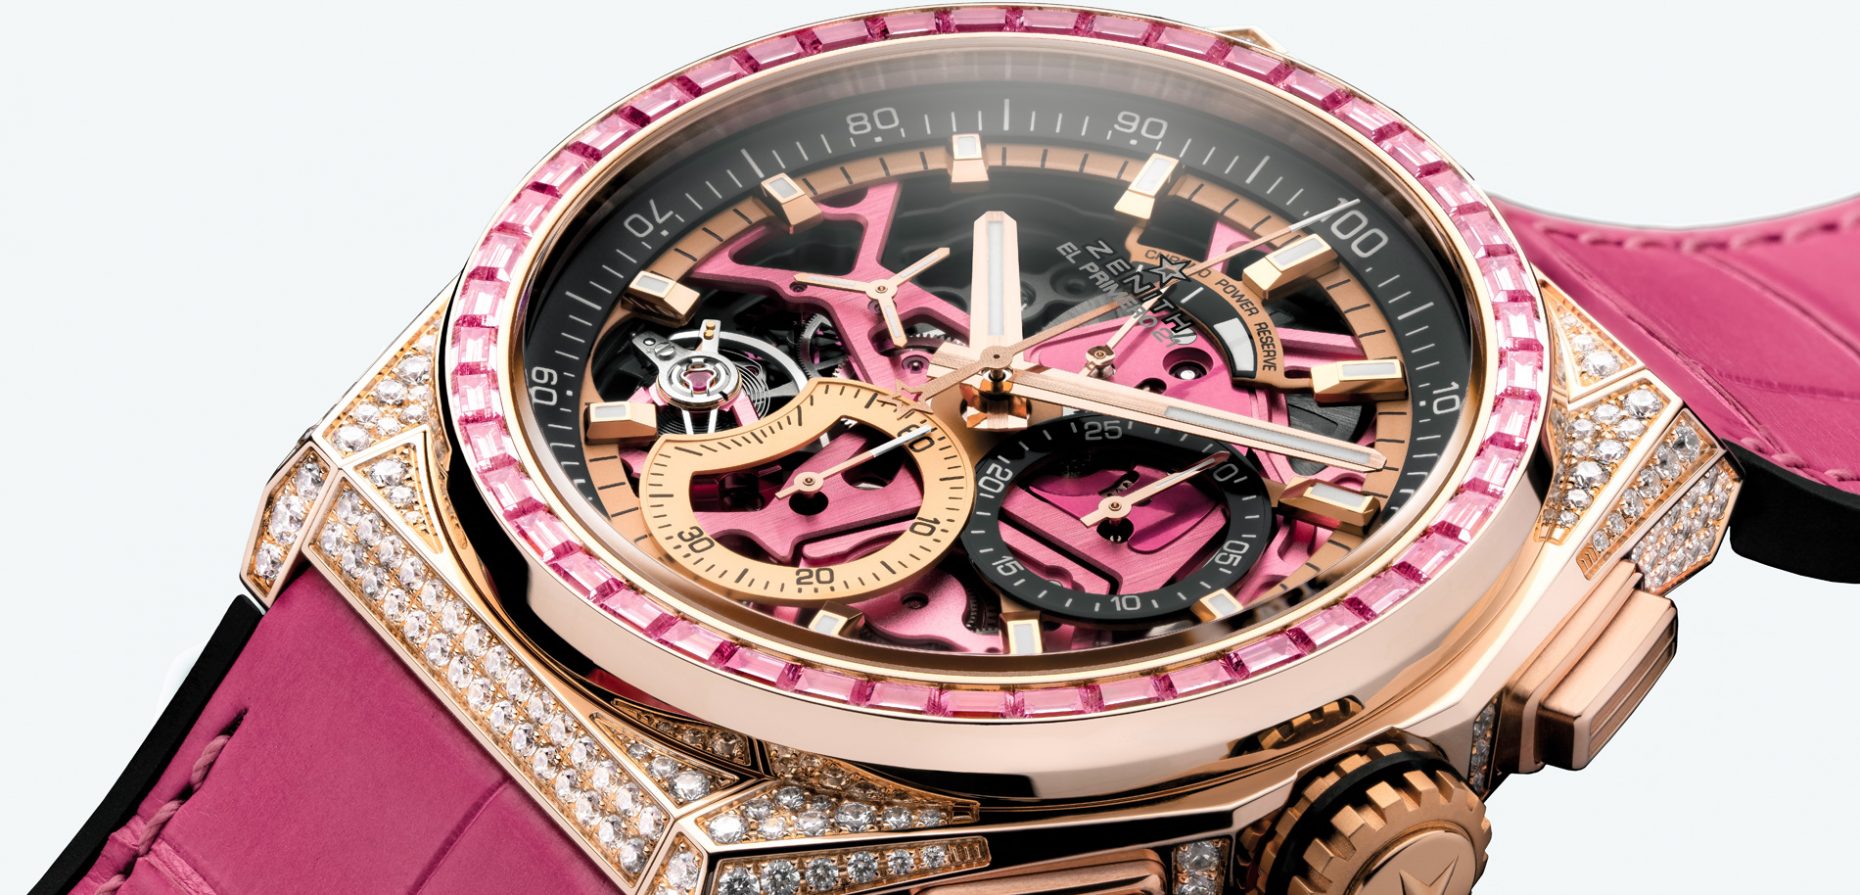 Perfekt eingeschalt präsentiert sich das aufwändig dekorierte El Primero Automatikchronographenwerk im Damenuhren-Sondermodell Zenith Defy 21 Pink Edition.